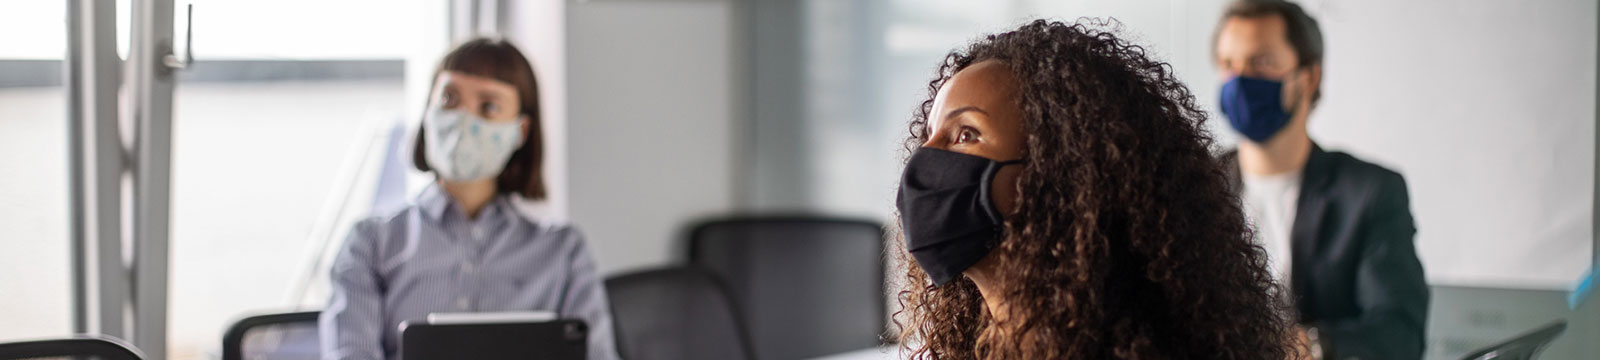 people in an office board room wearing masks